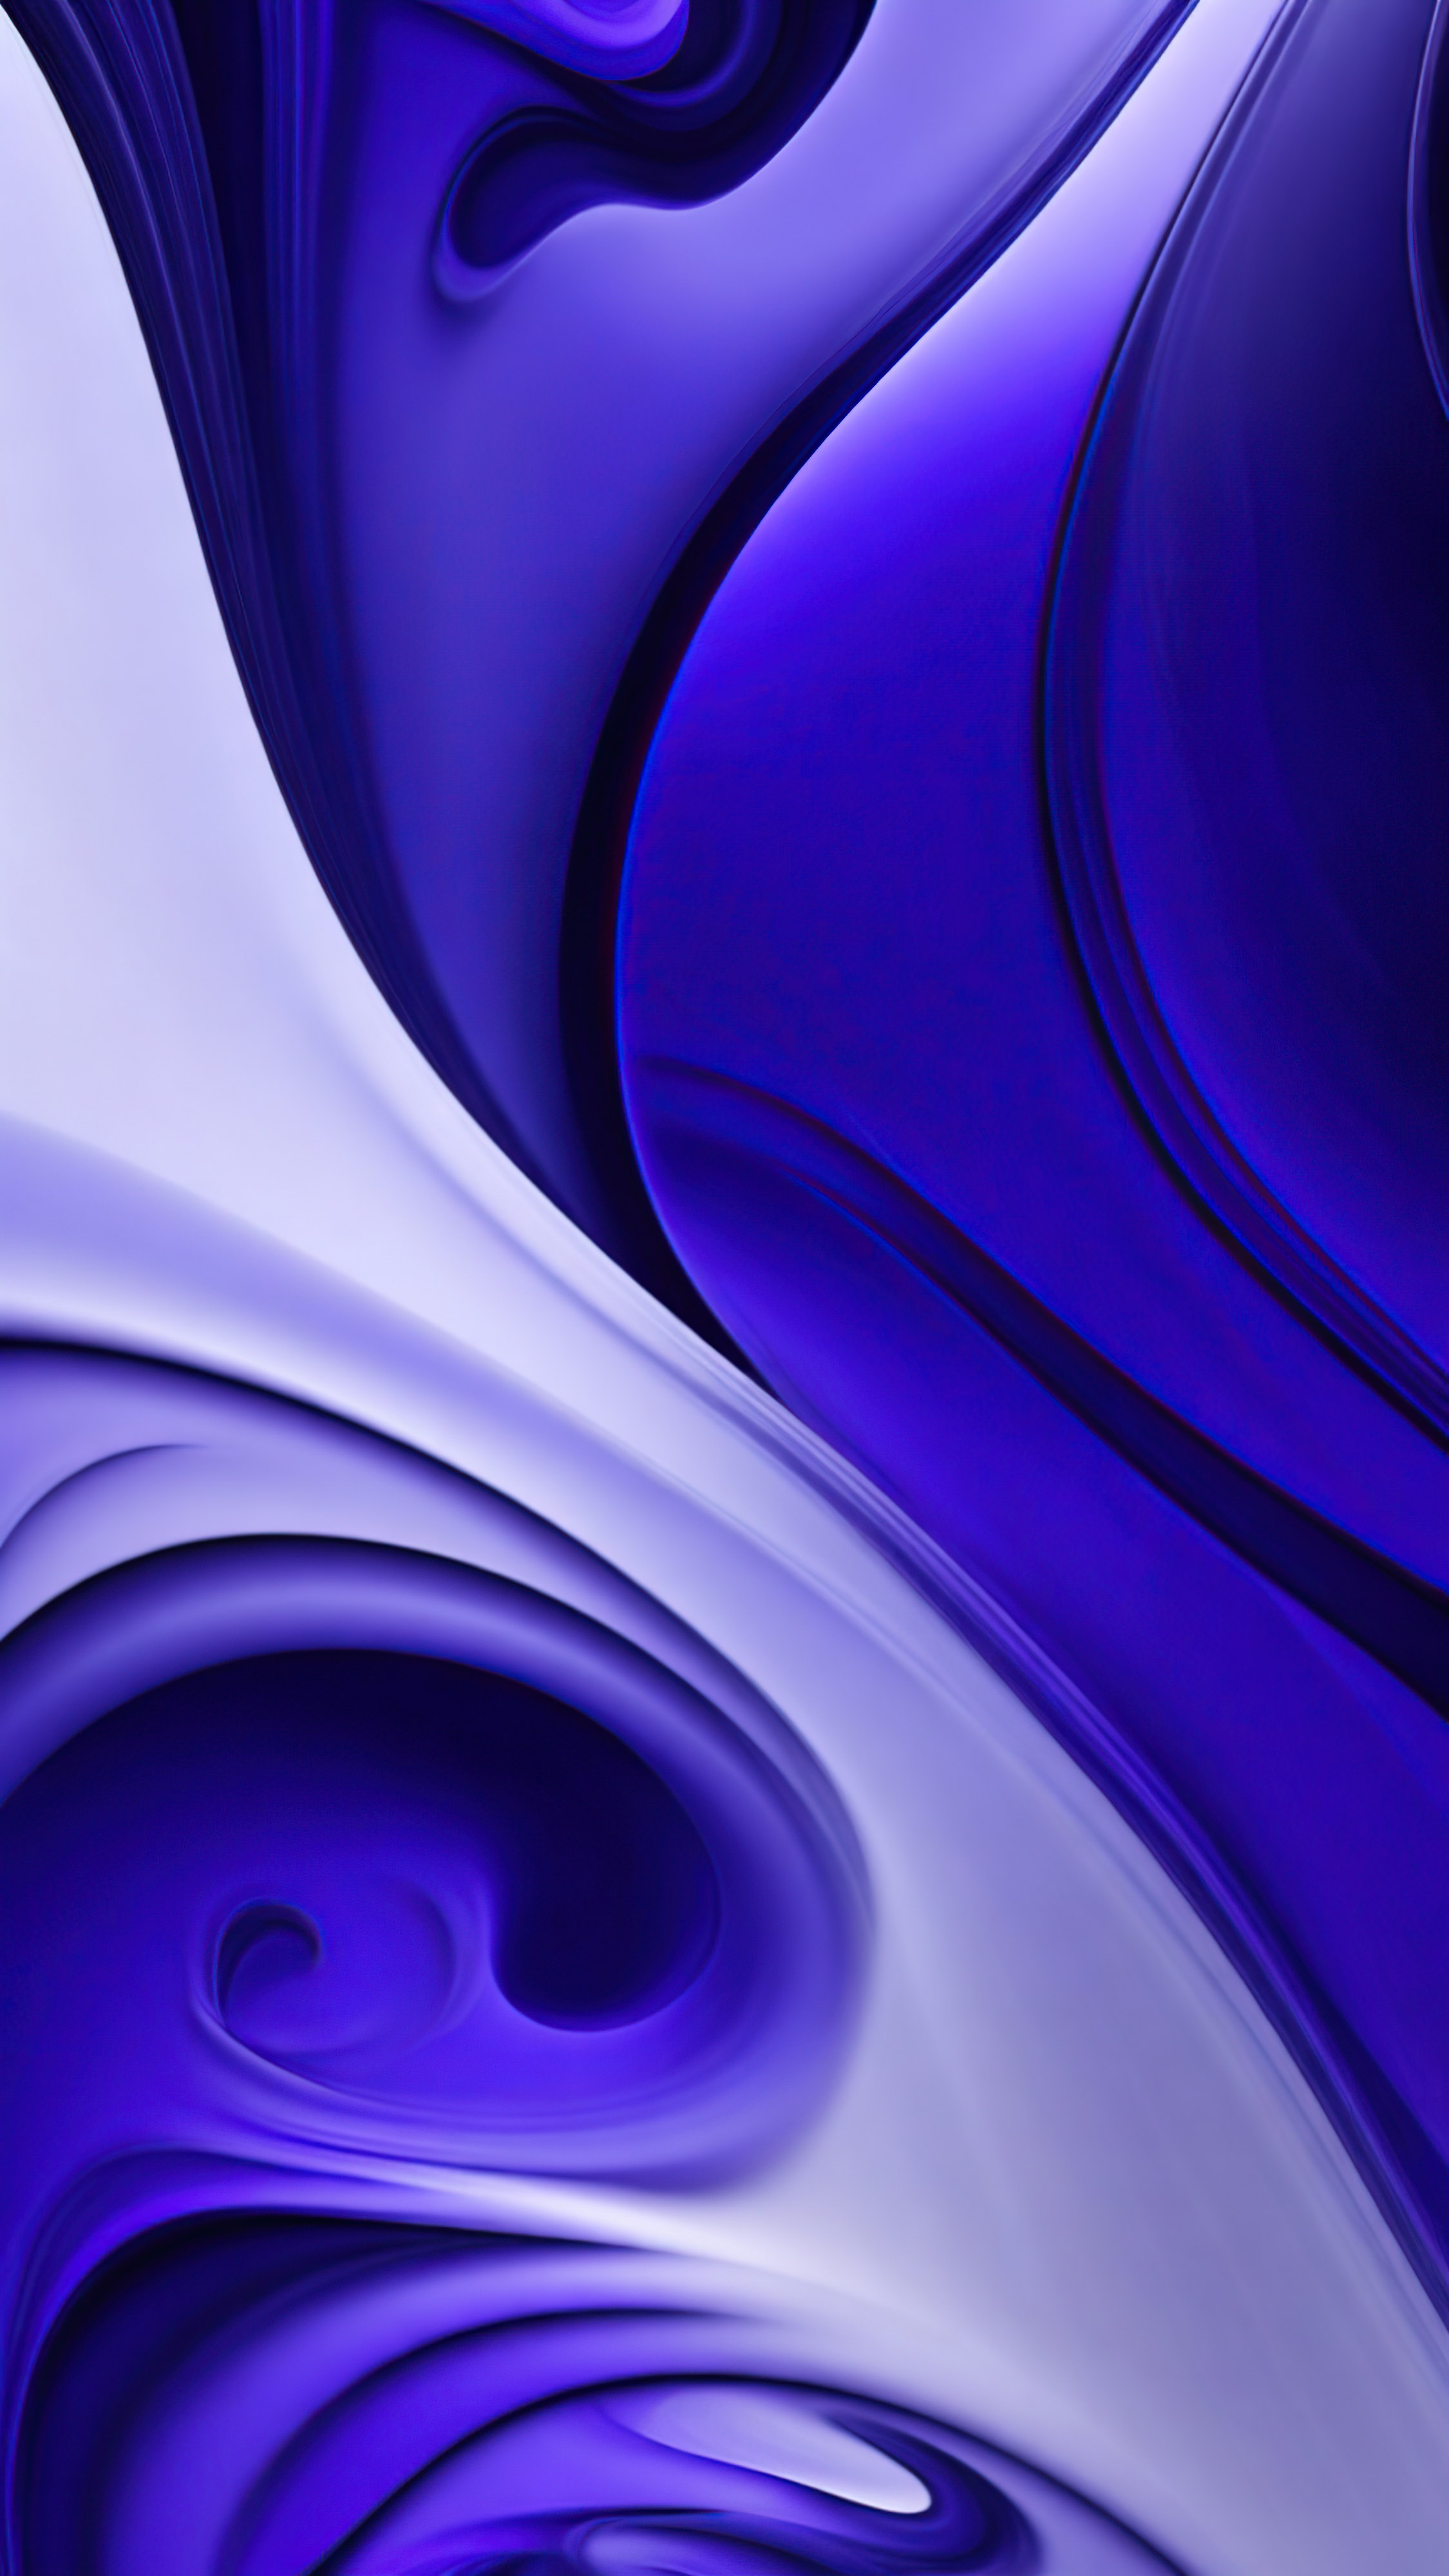 Admirez l'élégance de notre fond d'écran iPhone violet en 4K, avec une œuvre d'art abstraite qui présente une ambiance mystérieuse mais élégante à travers ses formes fluides dans un mélange de couleurs sombres et vibrantes, ornées de motifs tourbillonnants complexes contre un arrière-plan sombre. 